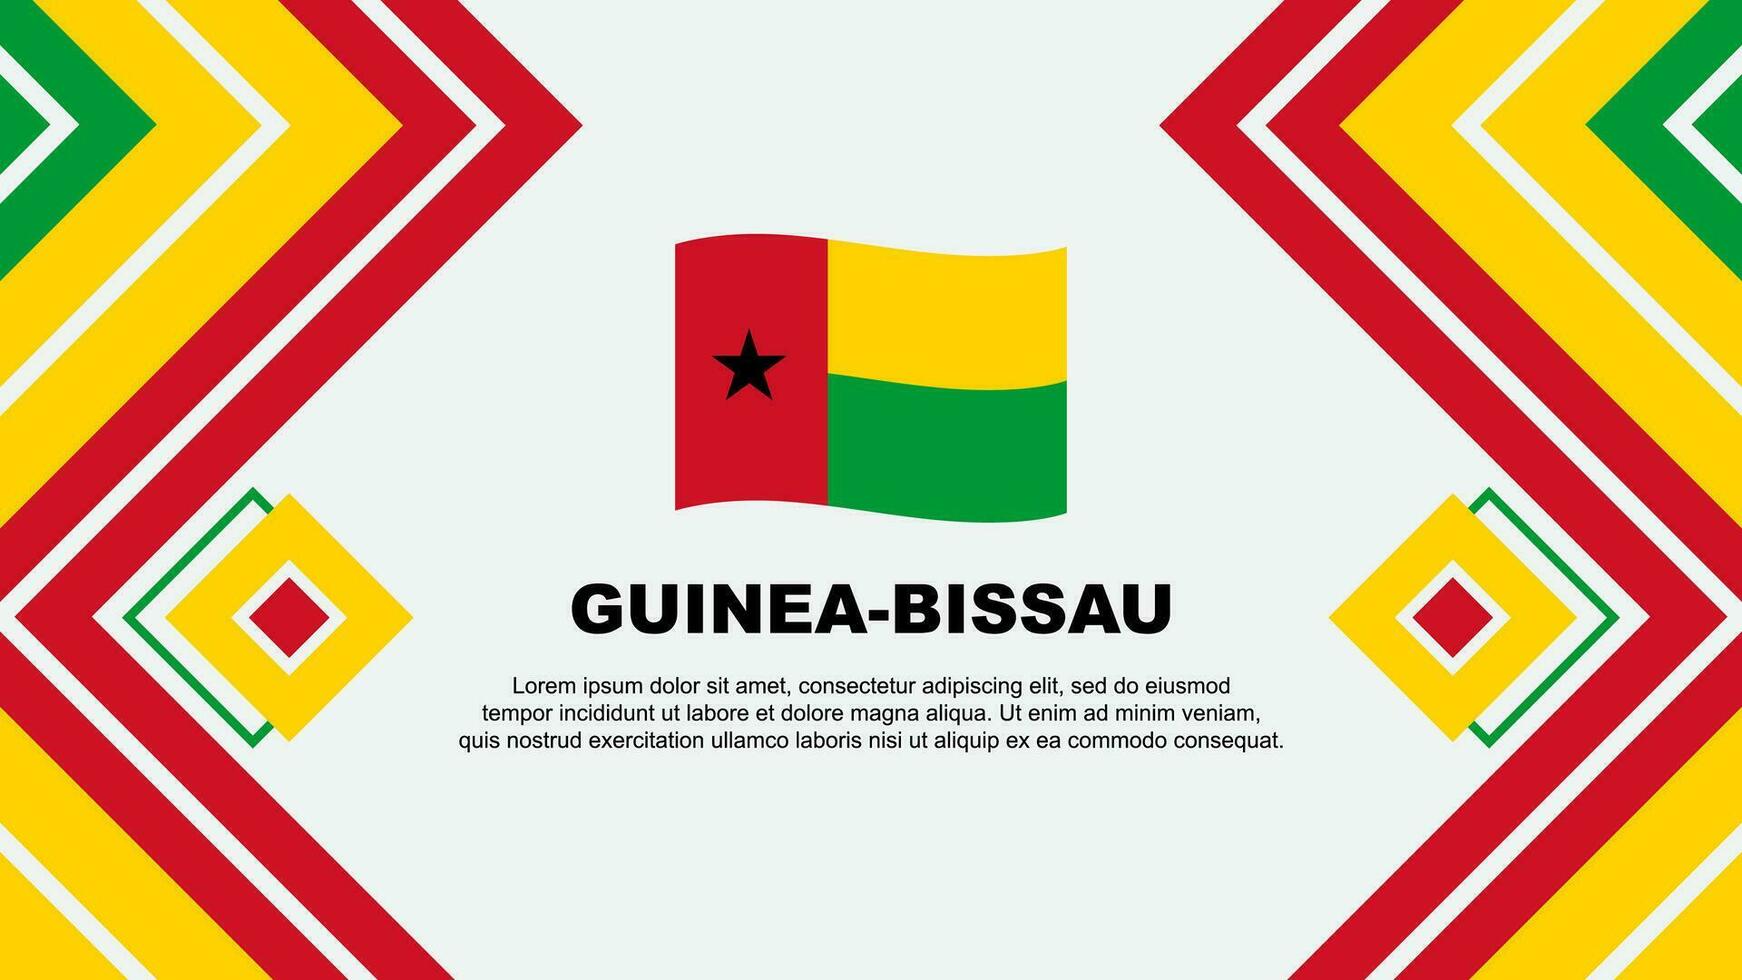 Guinea-Bissau Flag Abstract Background Design Template. Guinea-Bissau Independence Day Banner Wallpaper Vector Illustration. Guinea-Bissau Design